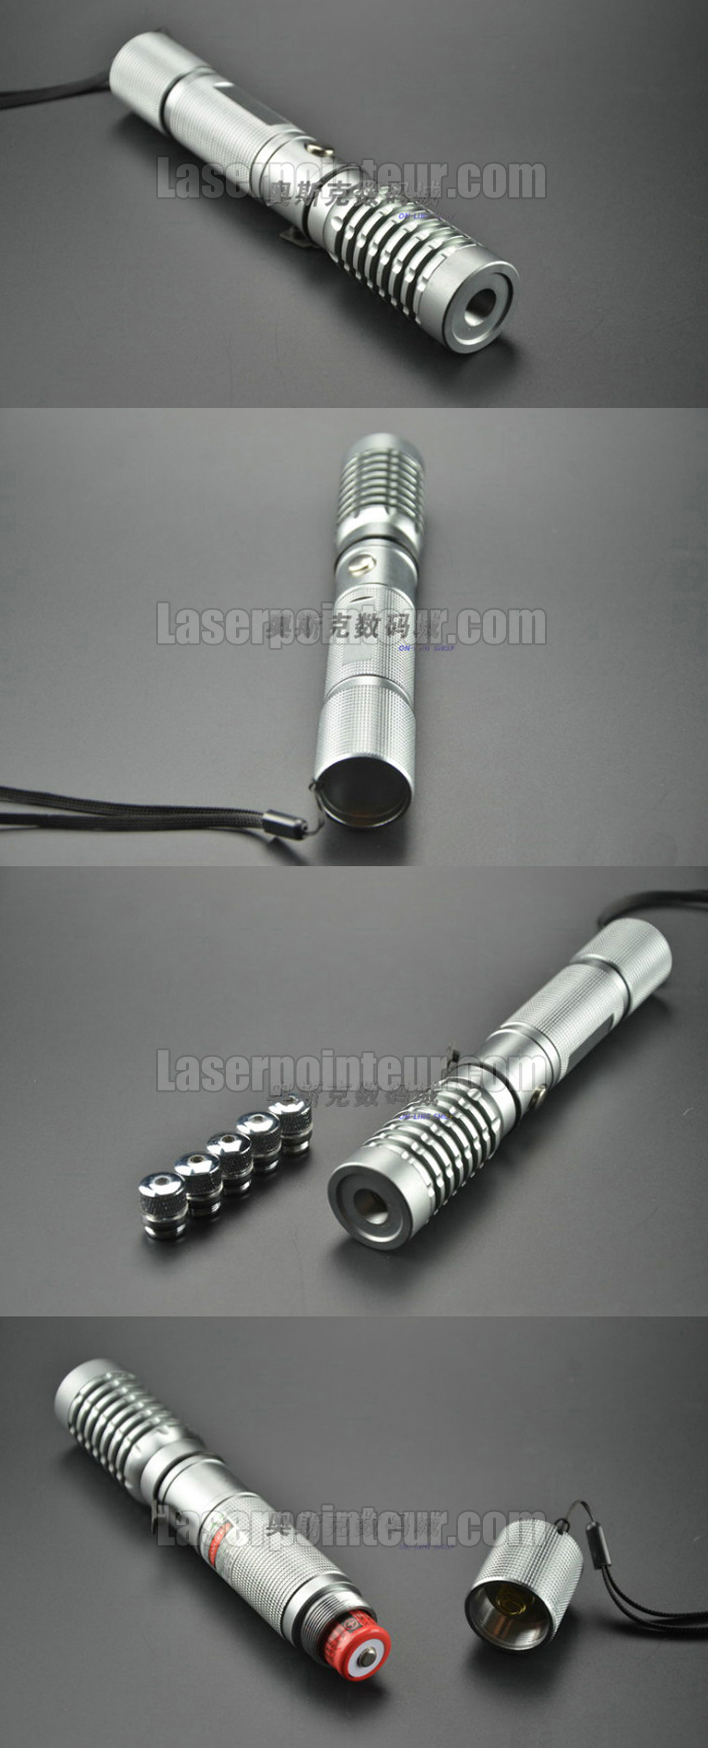 Puissant Pointeur Laser Vert lampe De Poche LED Haute - Temu Canada